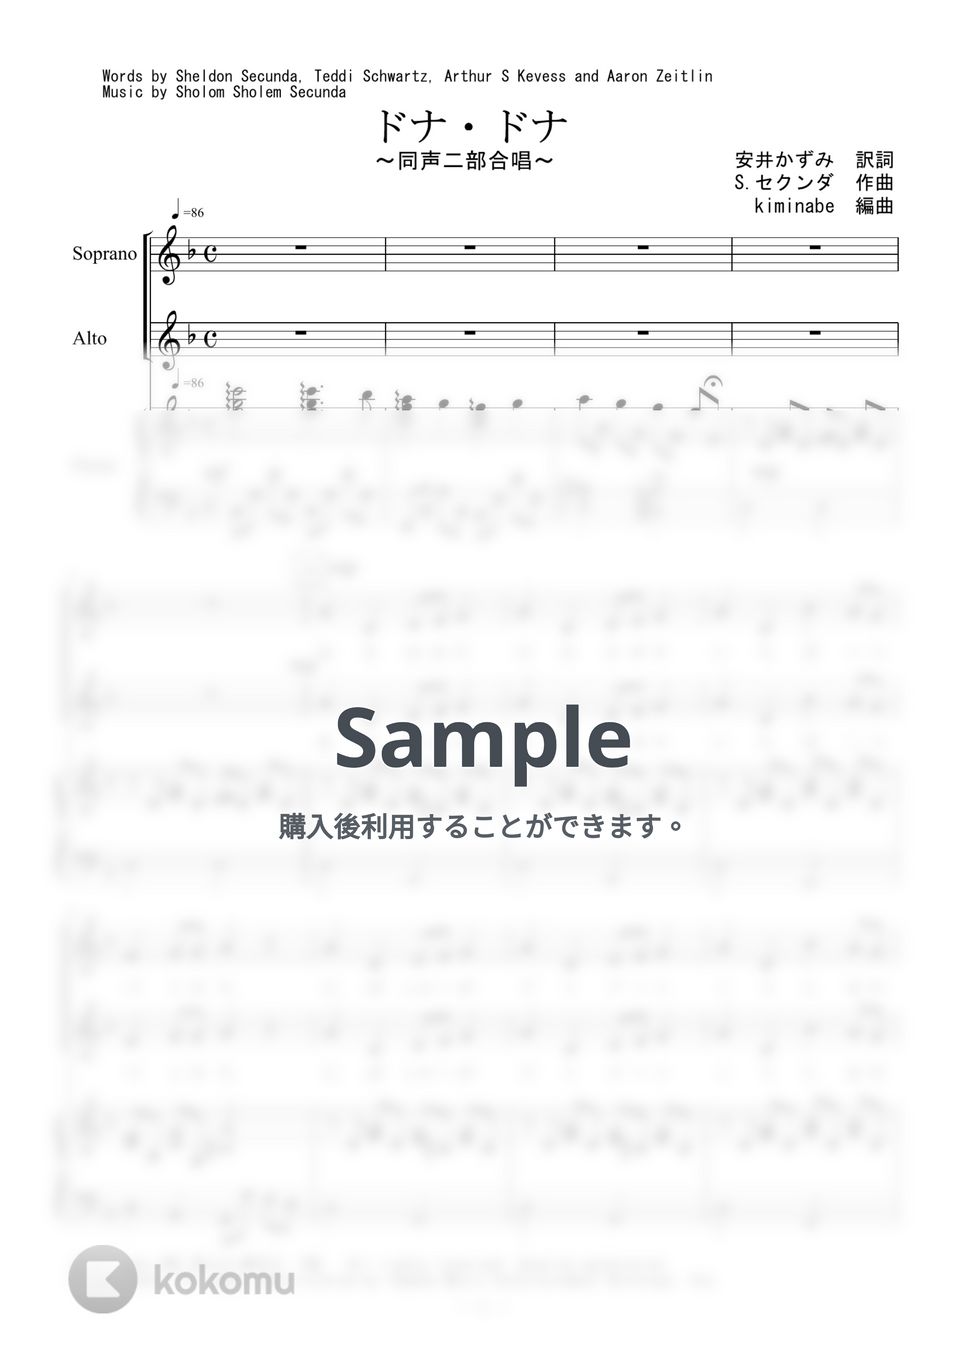 セクンダ - ドナ・ドナ (同声二部合唱) by kiminabe